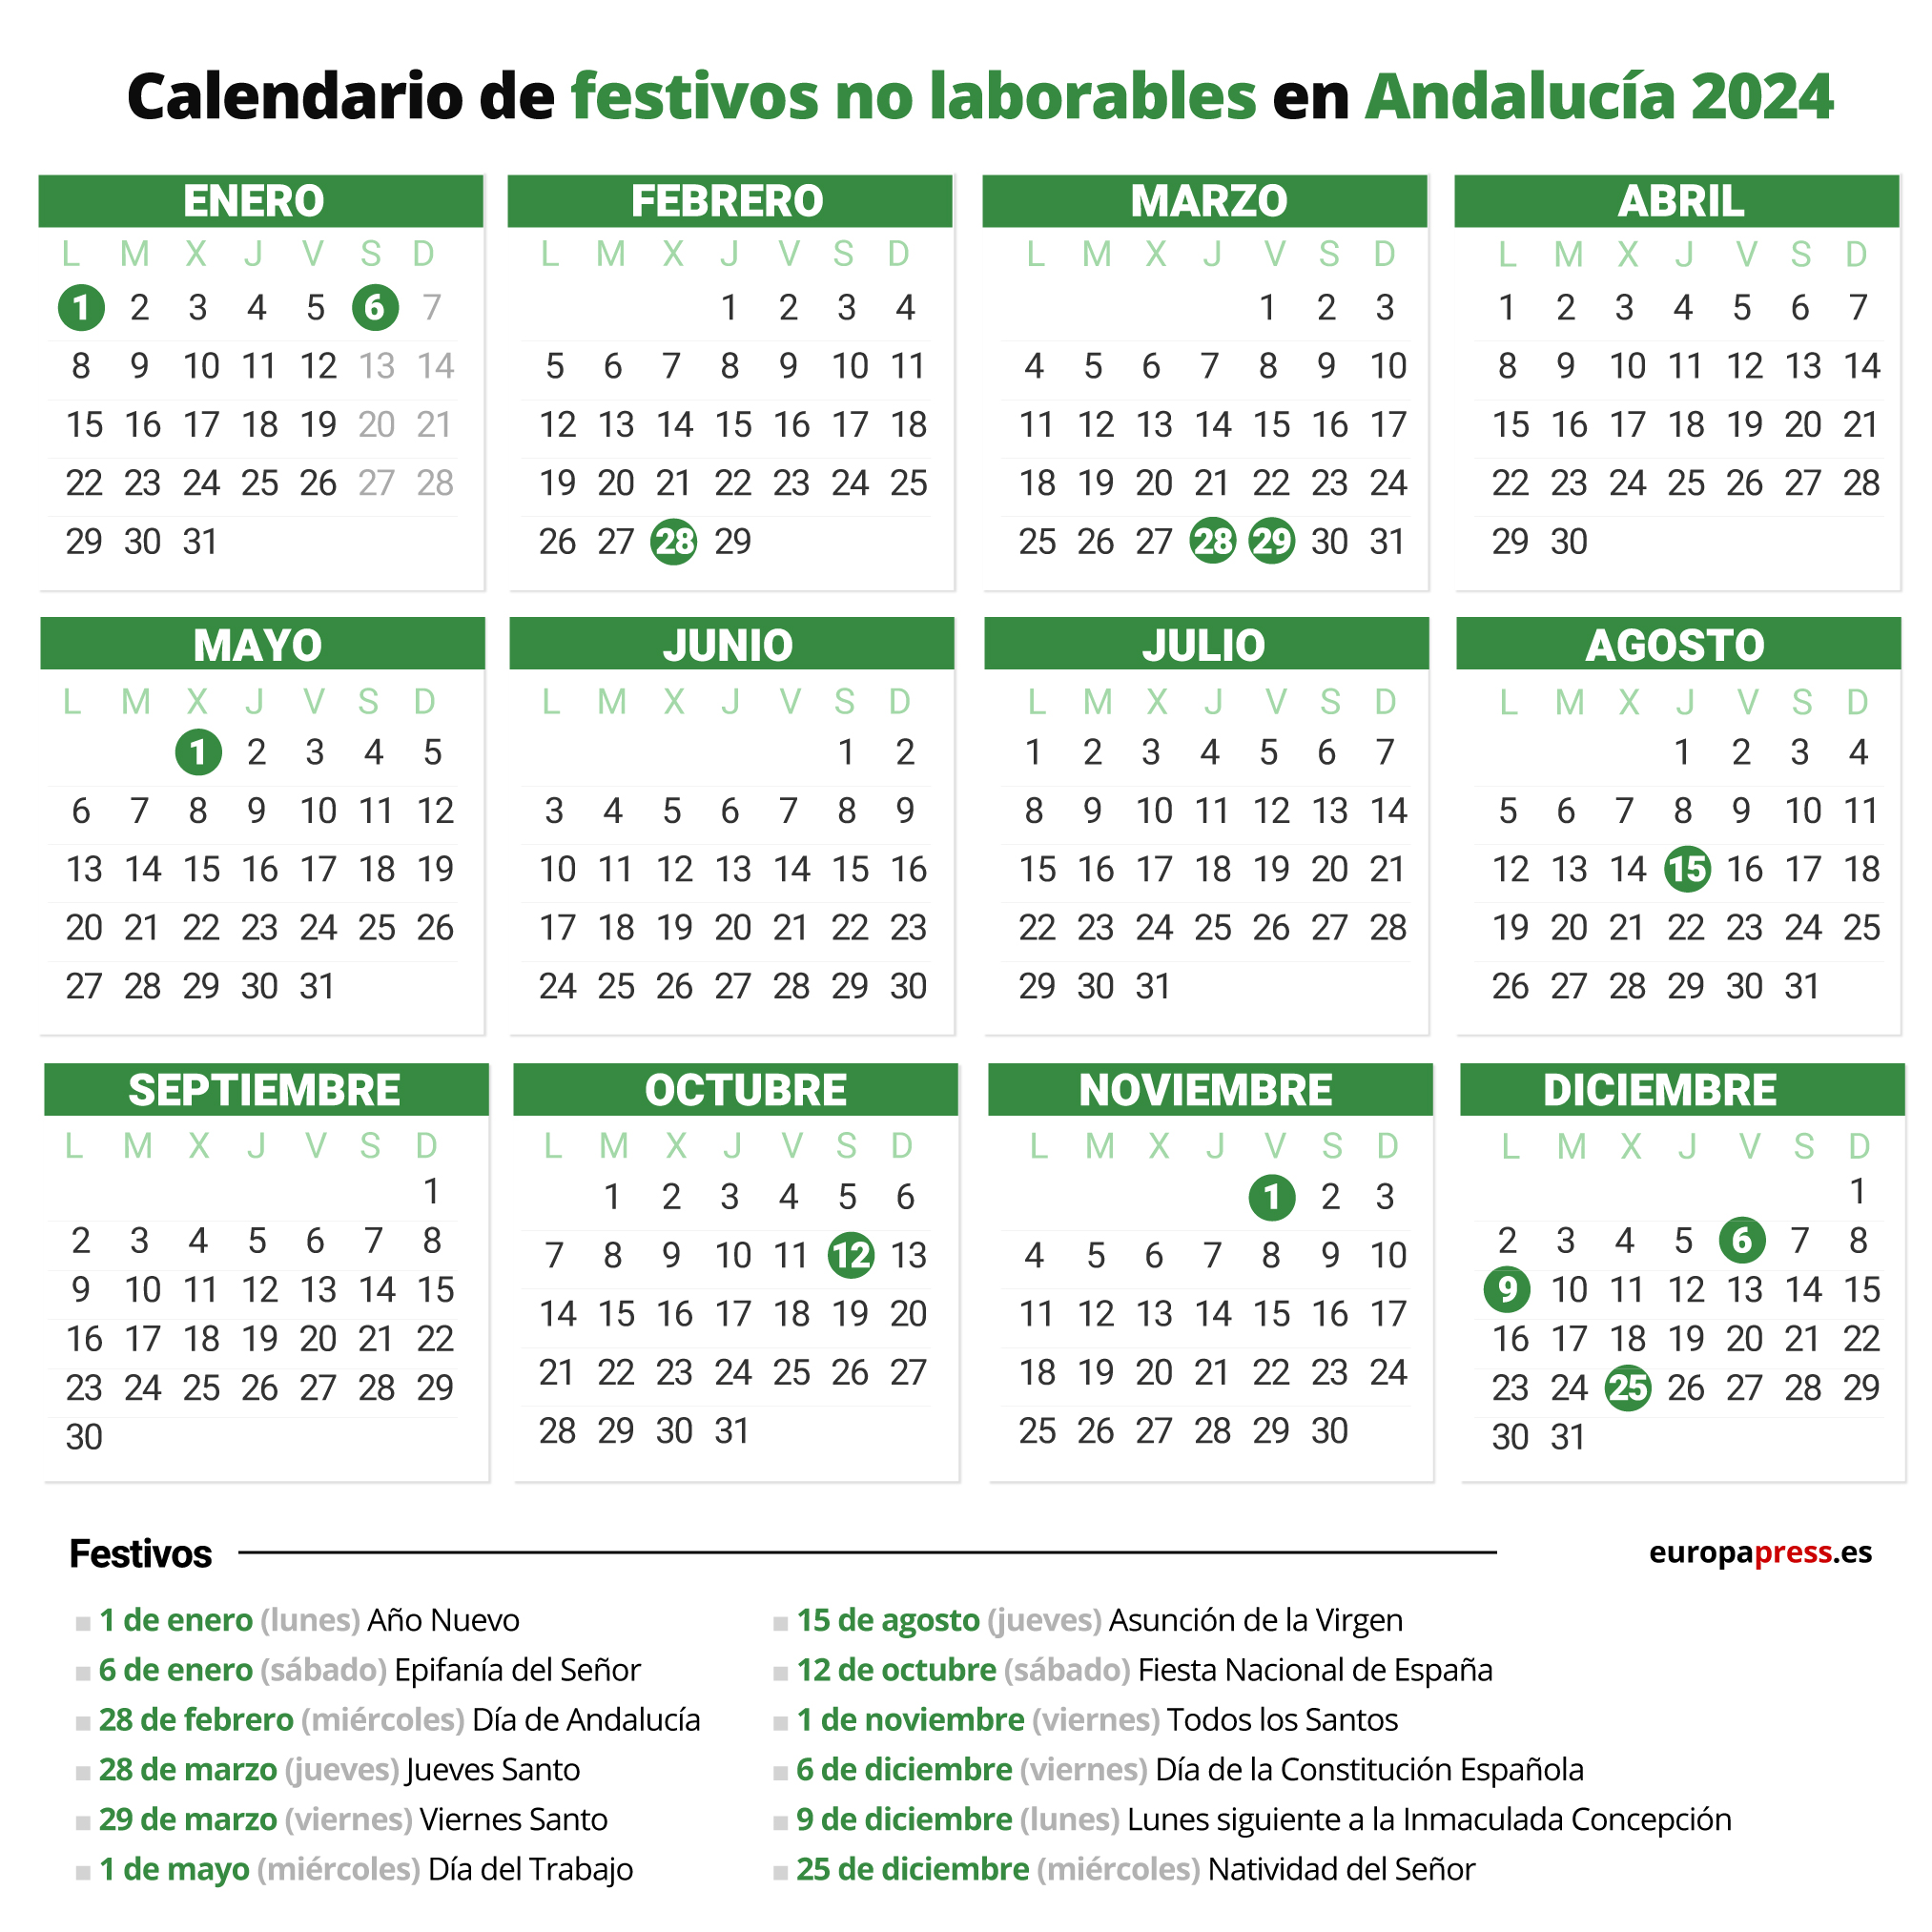 Calendario de festivos no laborables en Andalucía para 2024